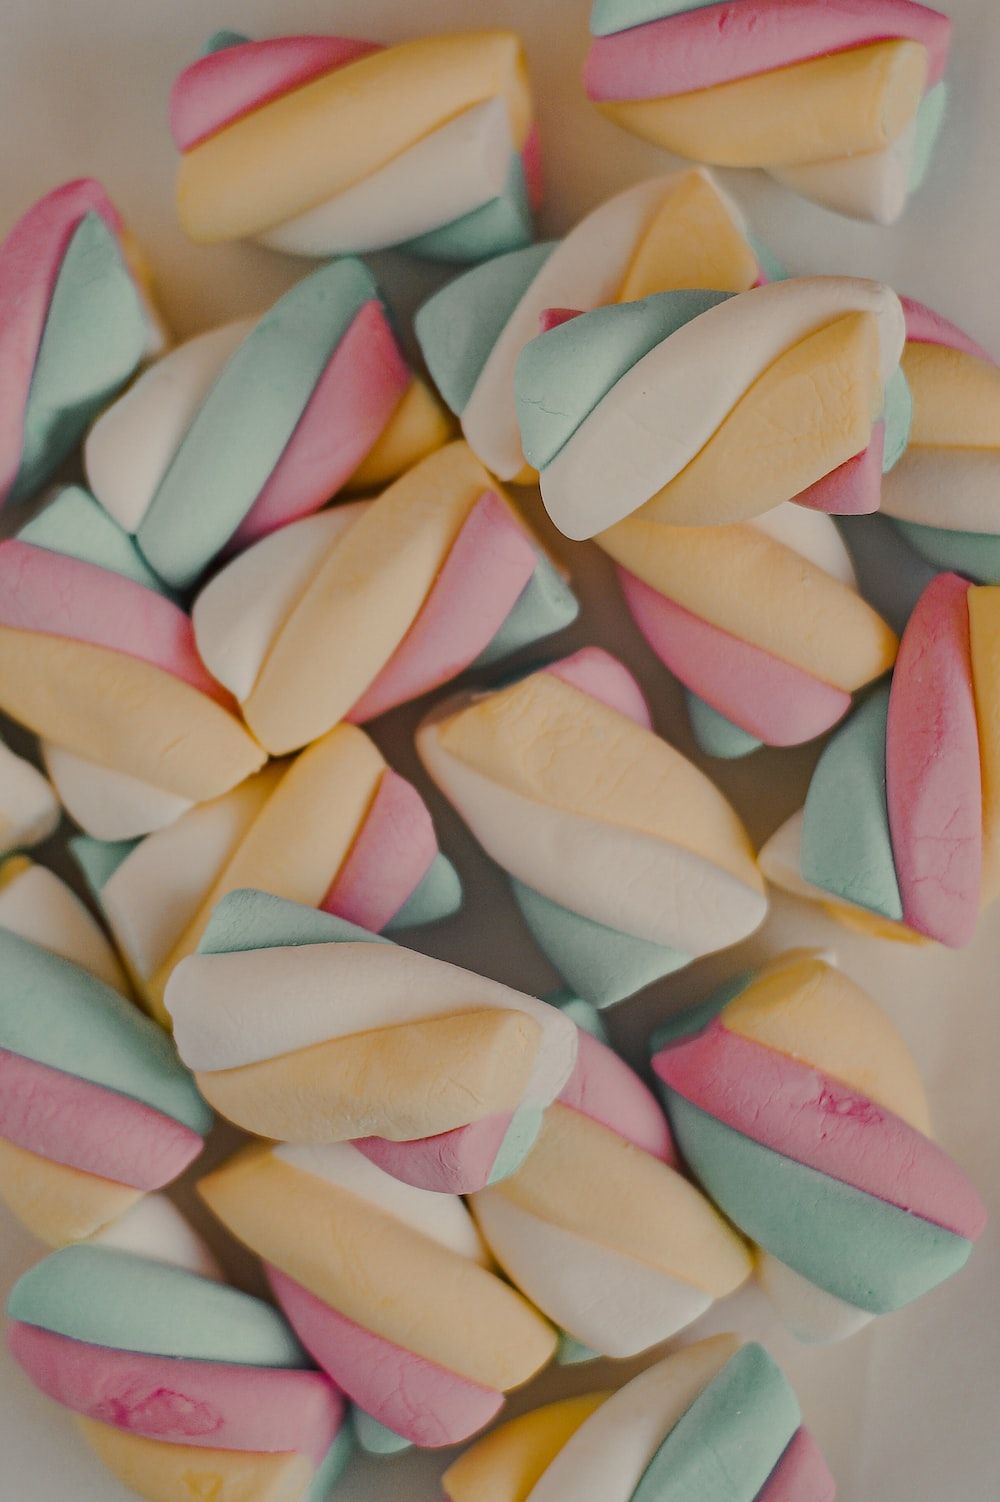  Süßigkeiten Hintergrundbild 1000x1502. Foto zum Thema Nahaufnahme eines tellers mit süßigkeiten